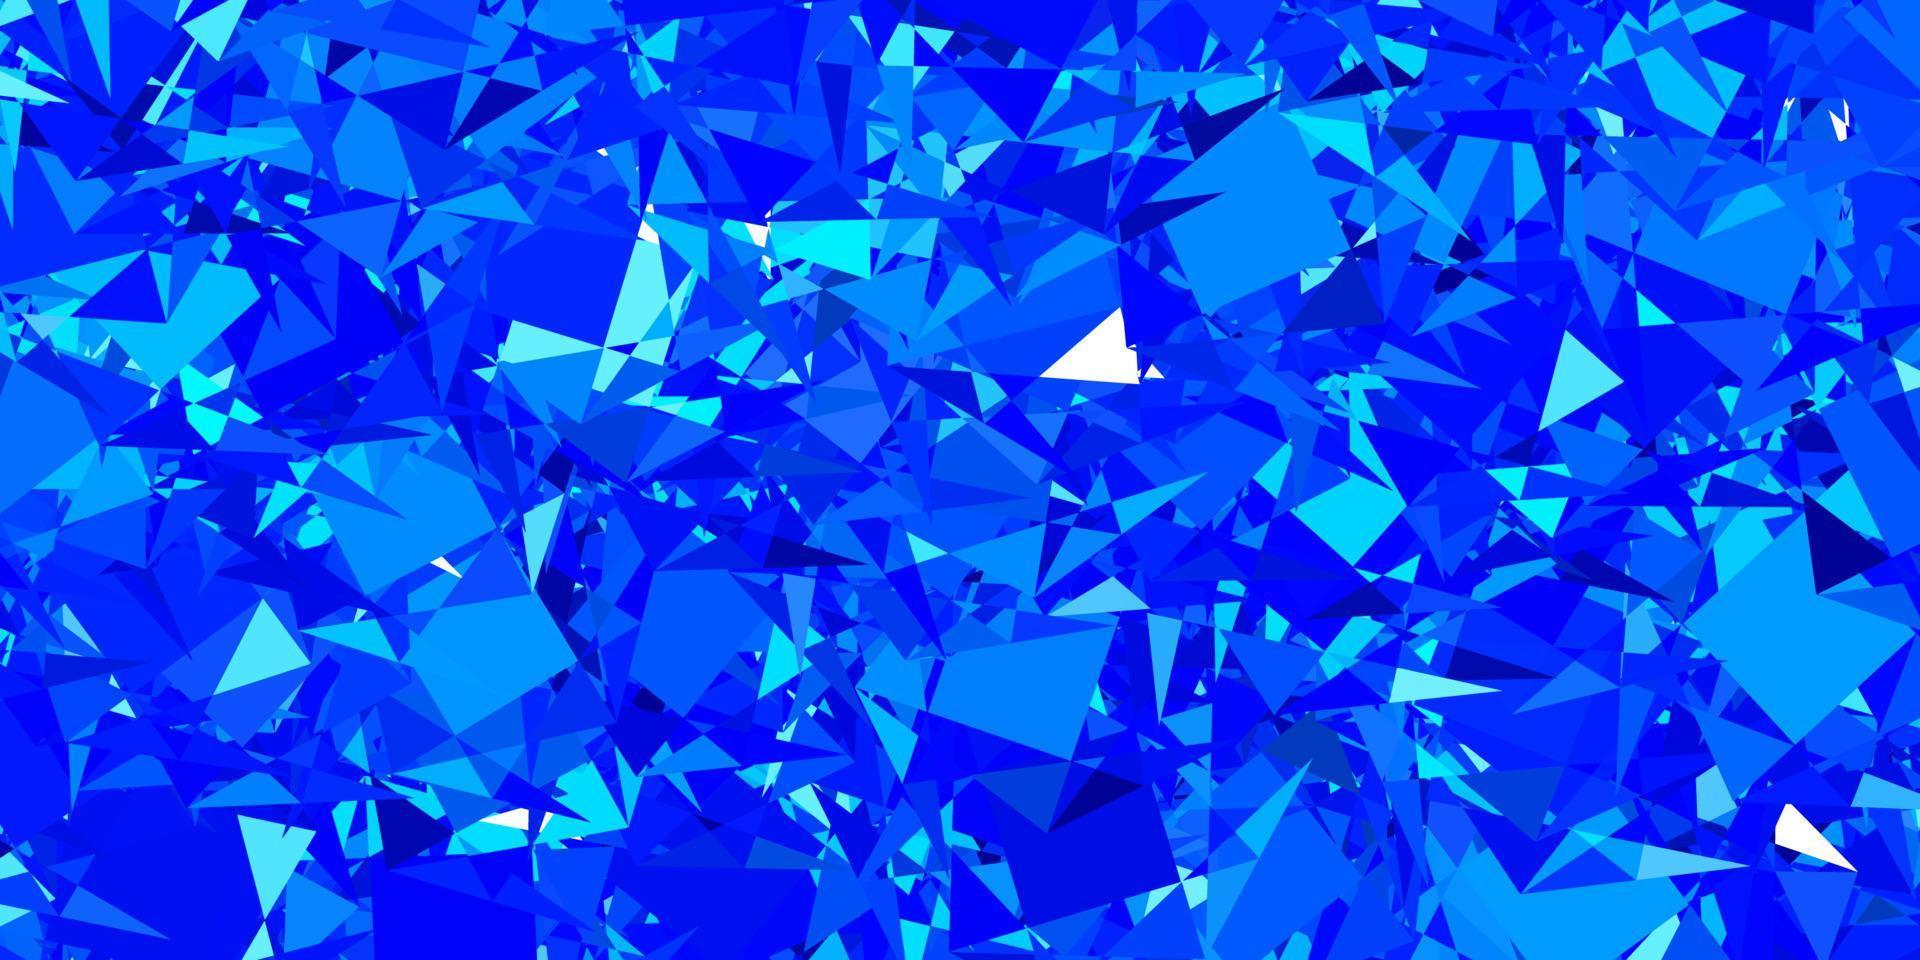 padrão de vetor azul escuro com formas poligonais.